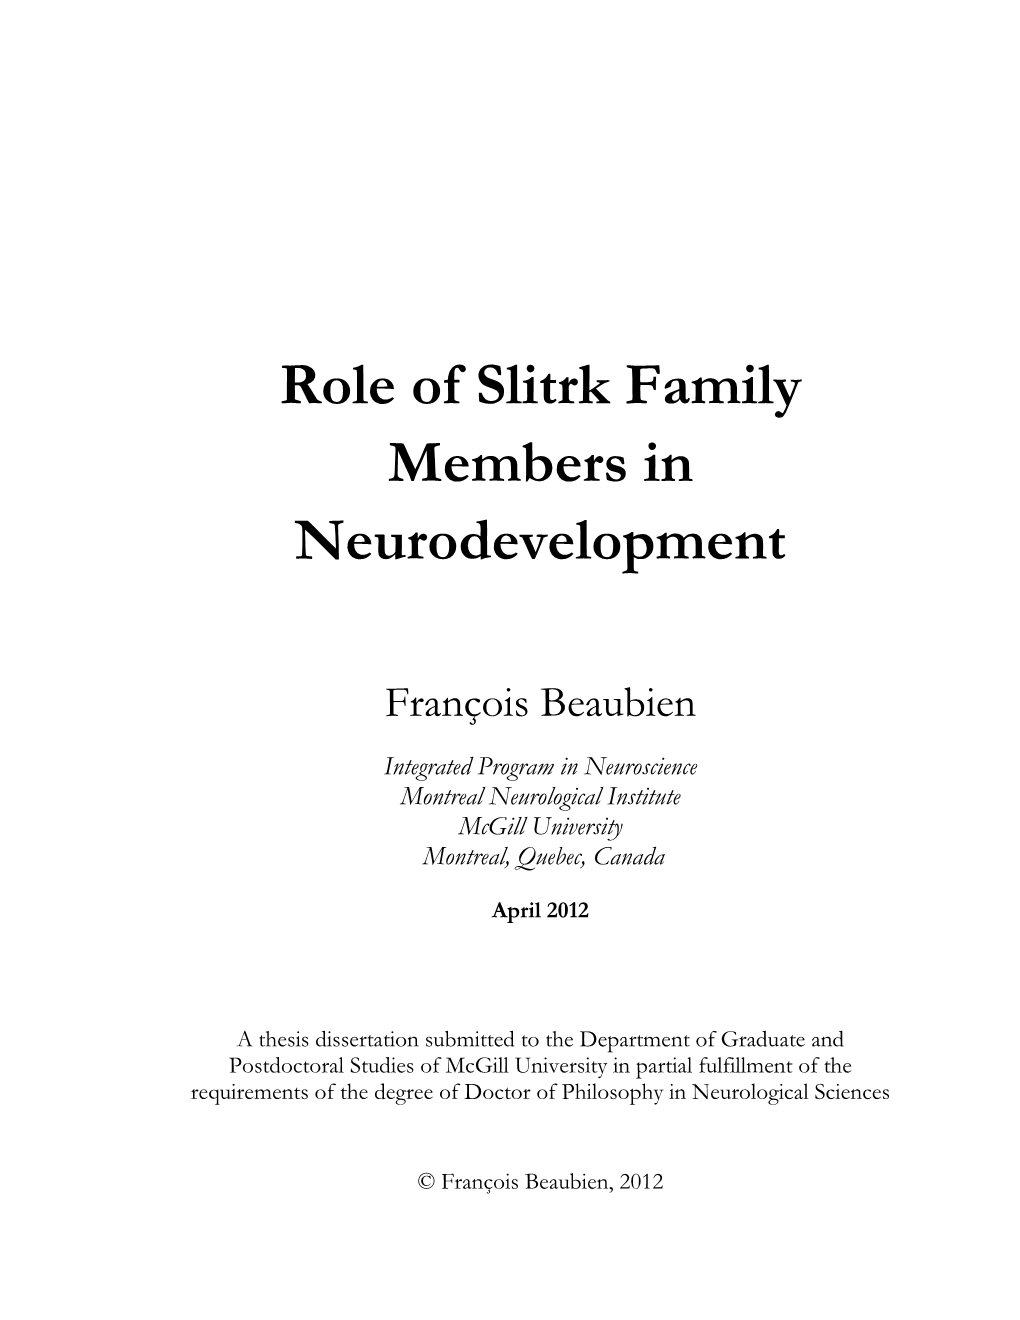 Role of Slitrk Family Members in Neurodevelopment